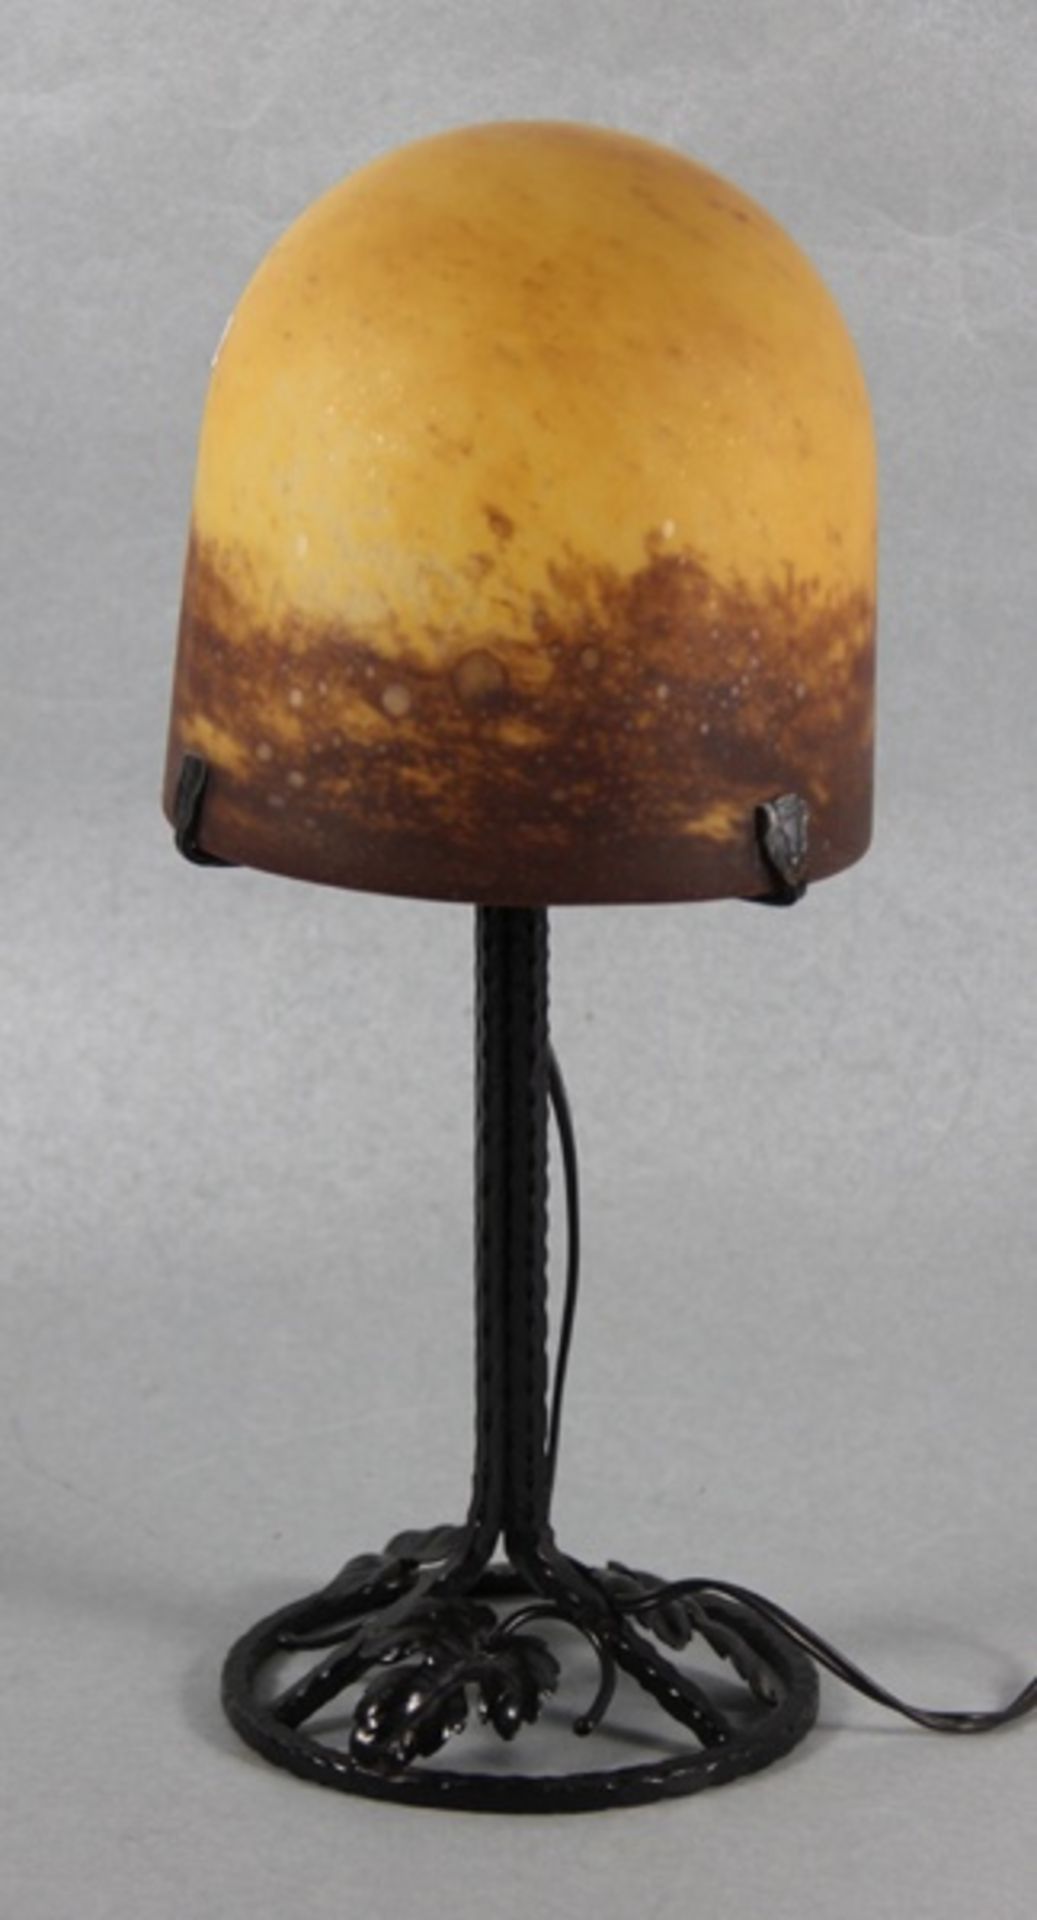 Jugendstillampeum 1900/20, Jugendstillampe, pilzförmiger Glasschirm mit orange-braunen